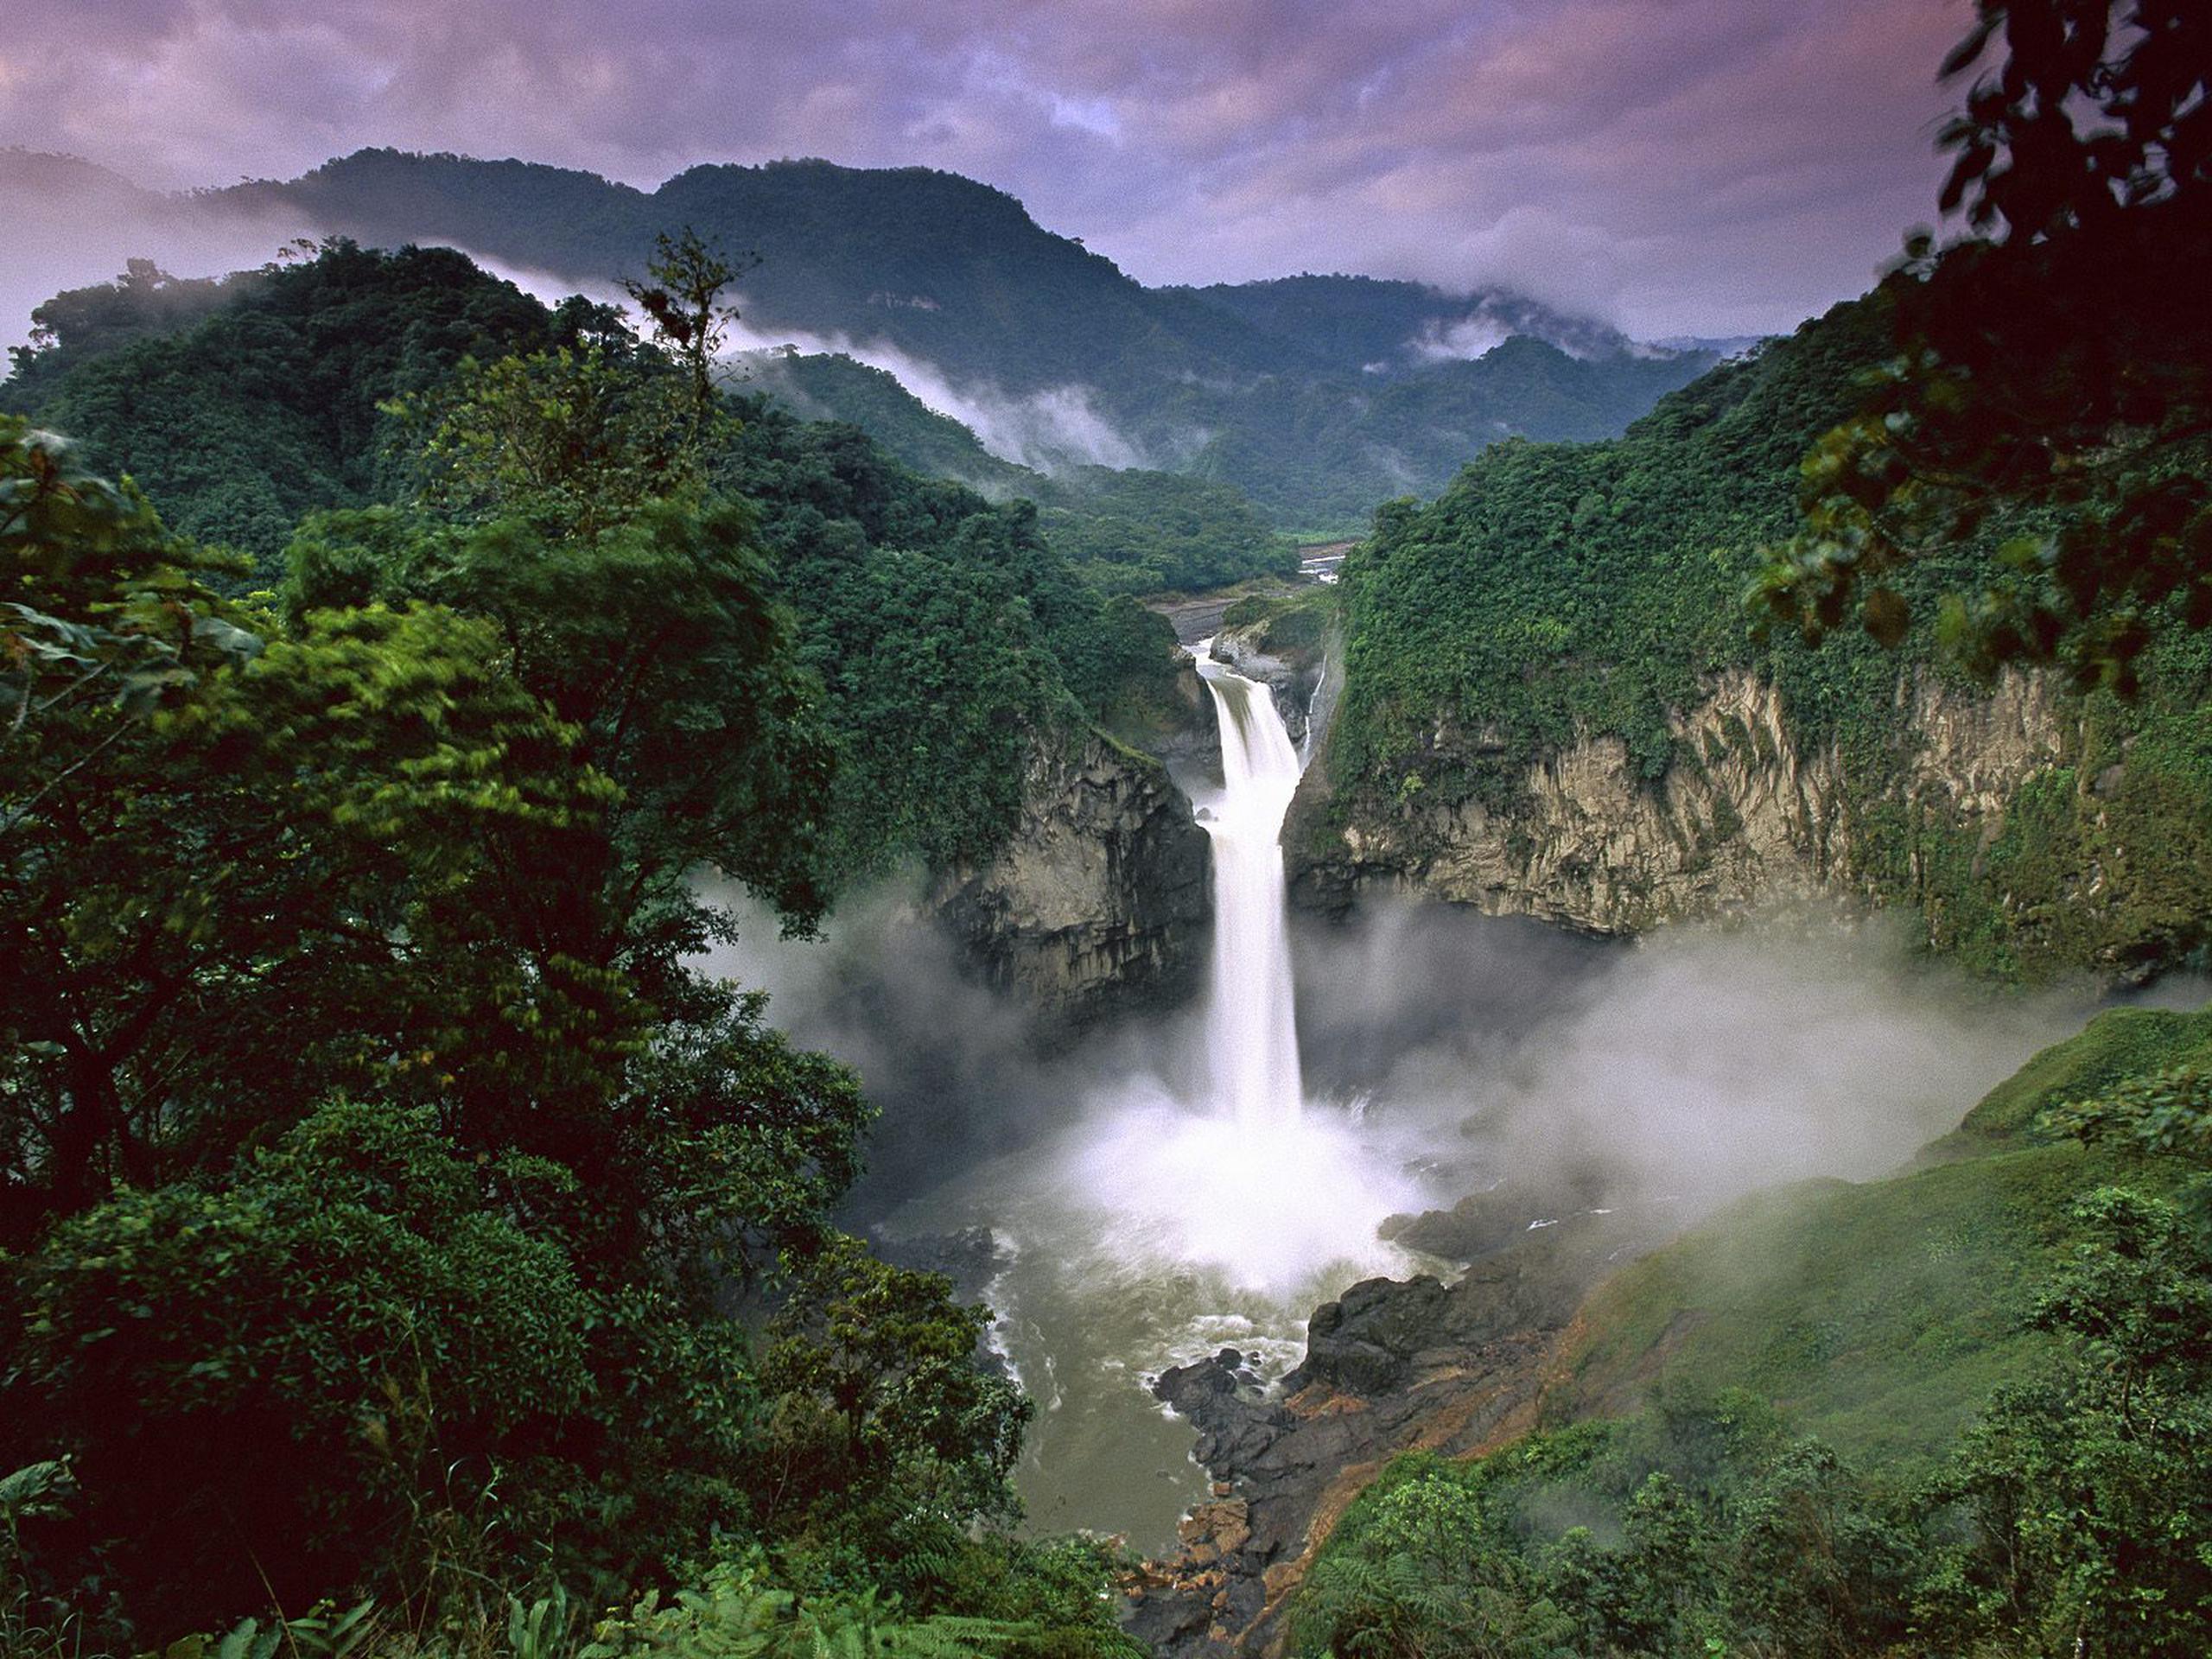 Durante la jornada se hizo énfasis en la protección de la Amazonia, que hoy está en peligro por la deforestación descontrolada y el cambio climático.